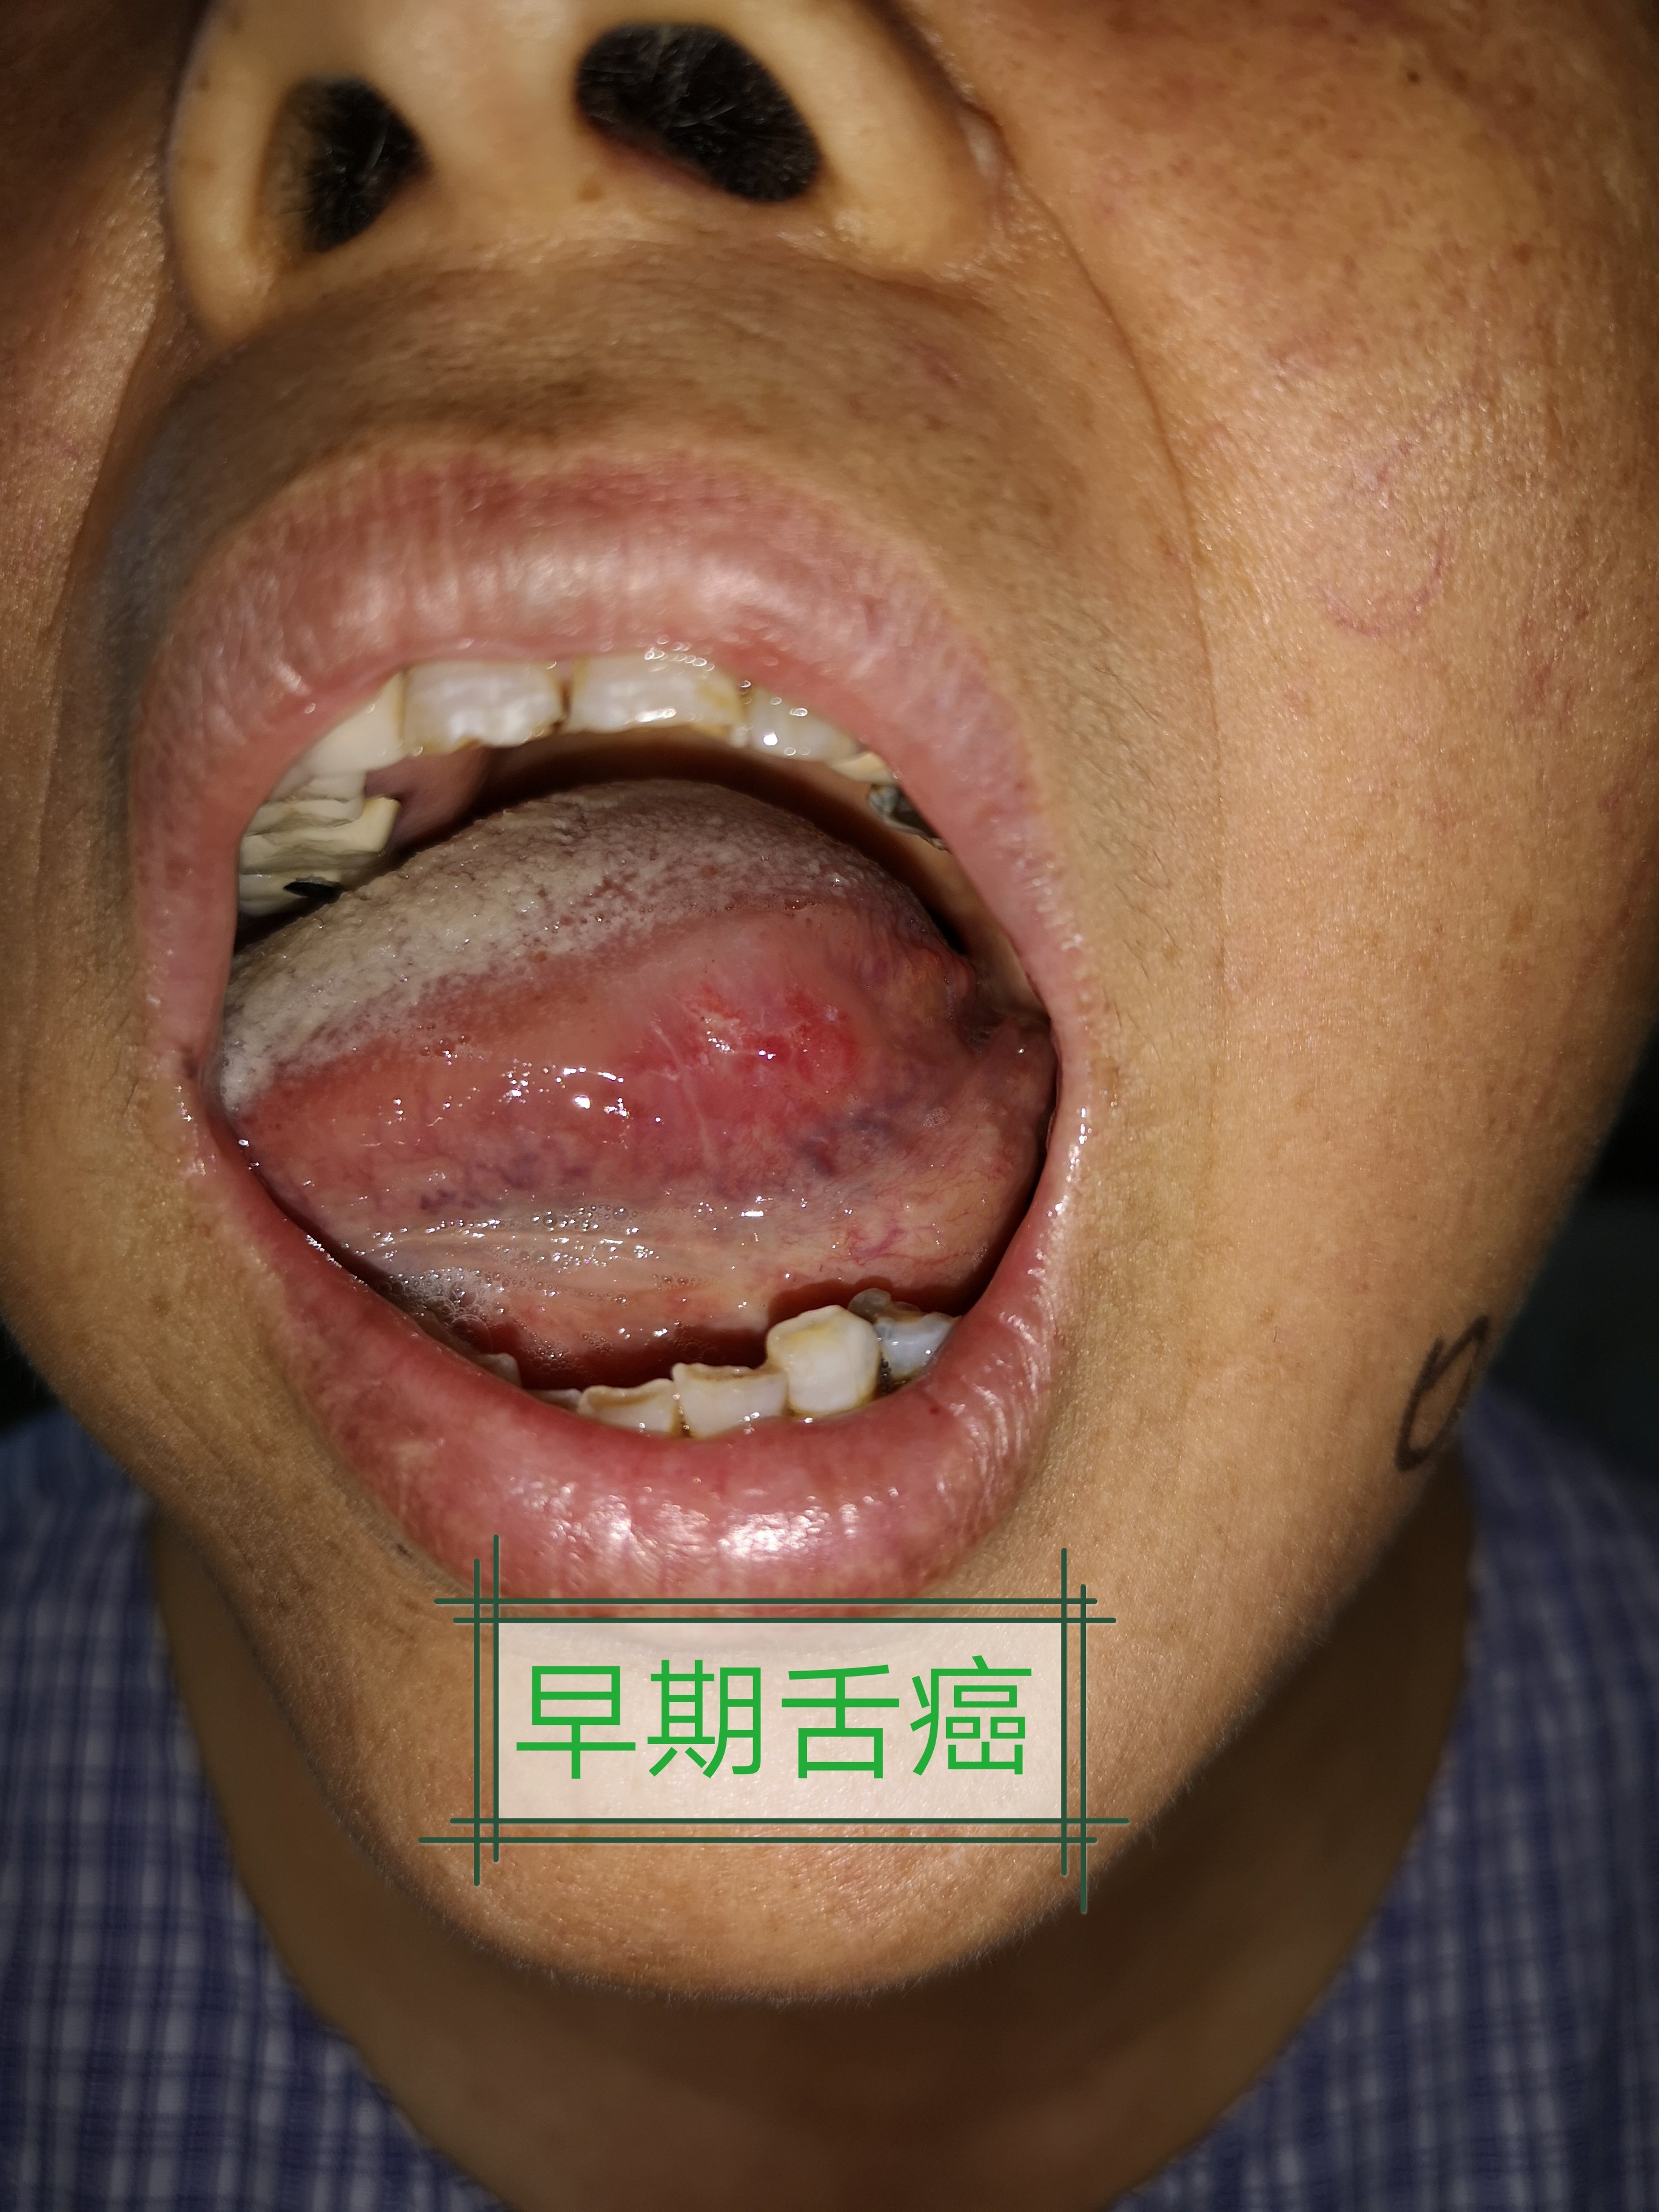 史,部分患者与牙齿残根,烂牙,不良修复体等长期慢性刺激,也可由舌白斑